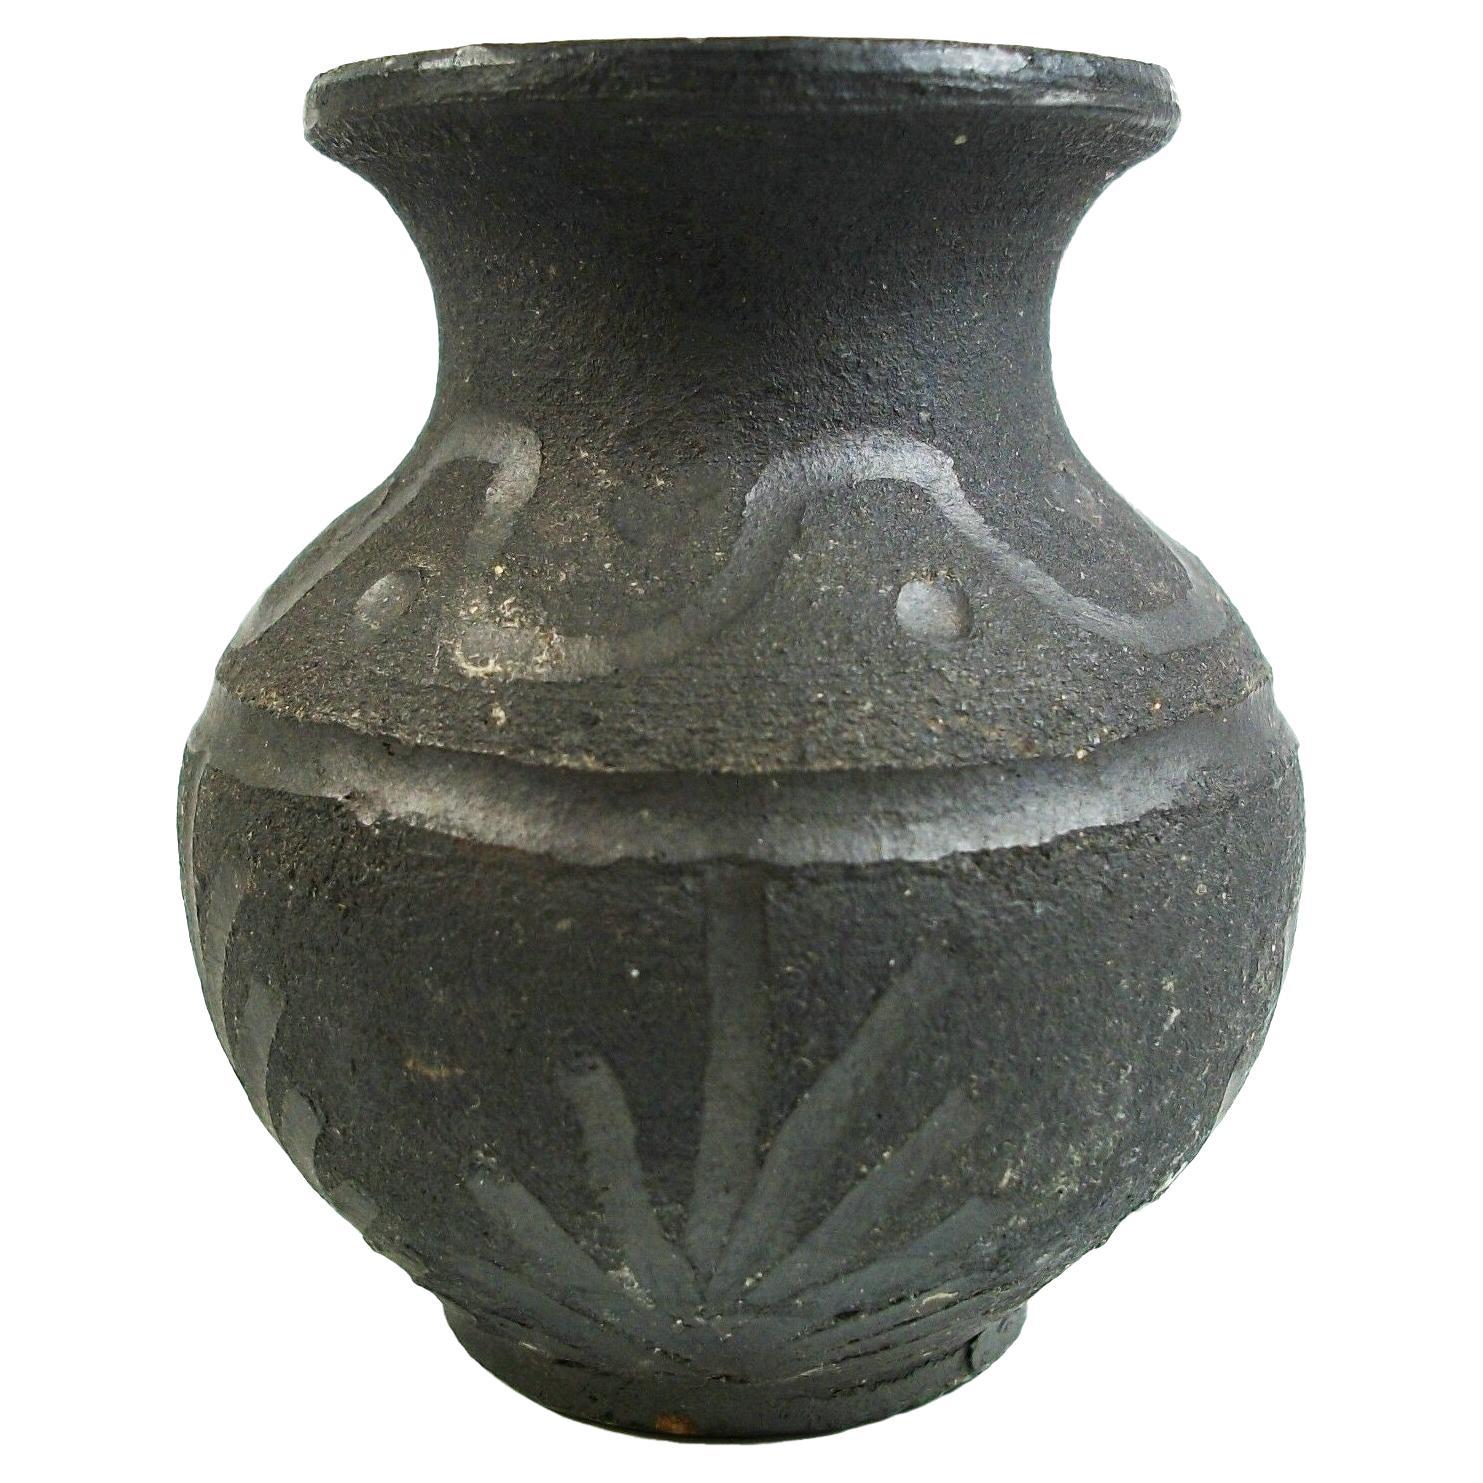 Miniature Raku Studio Pottery Bud Vase - Incised Decoration - Late 20th Century For Sale